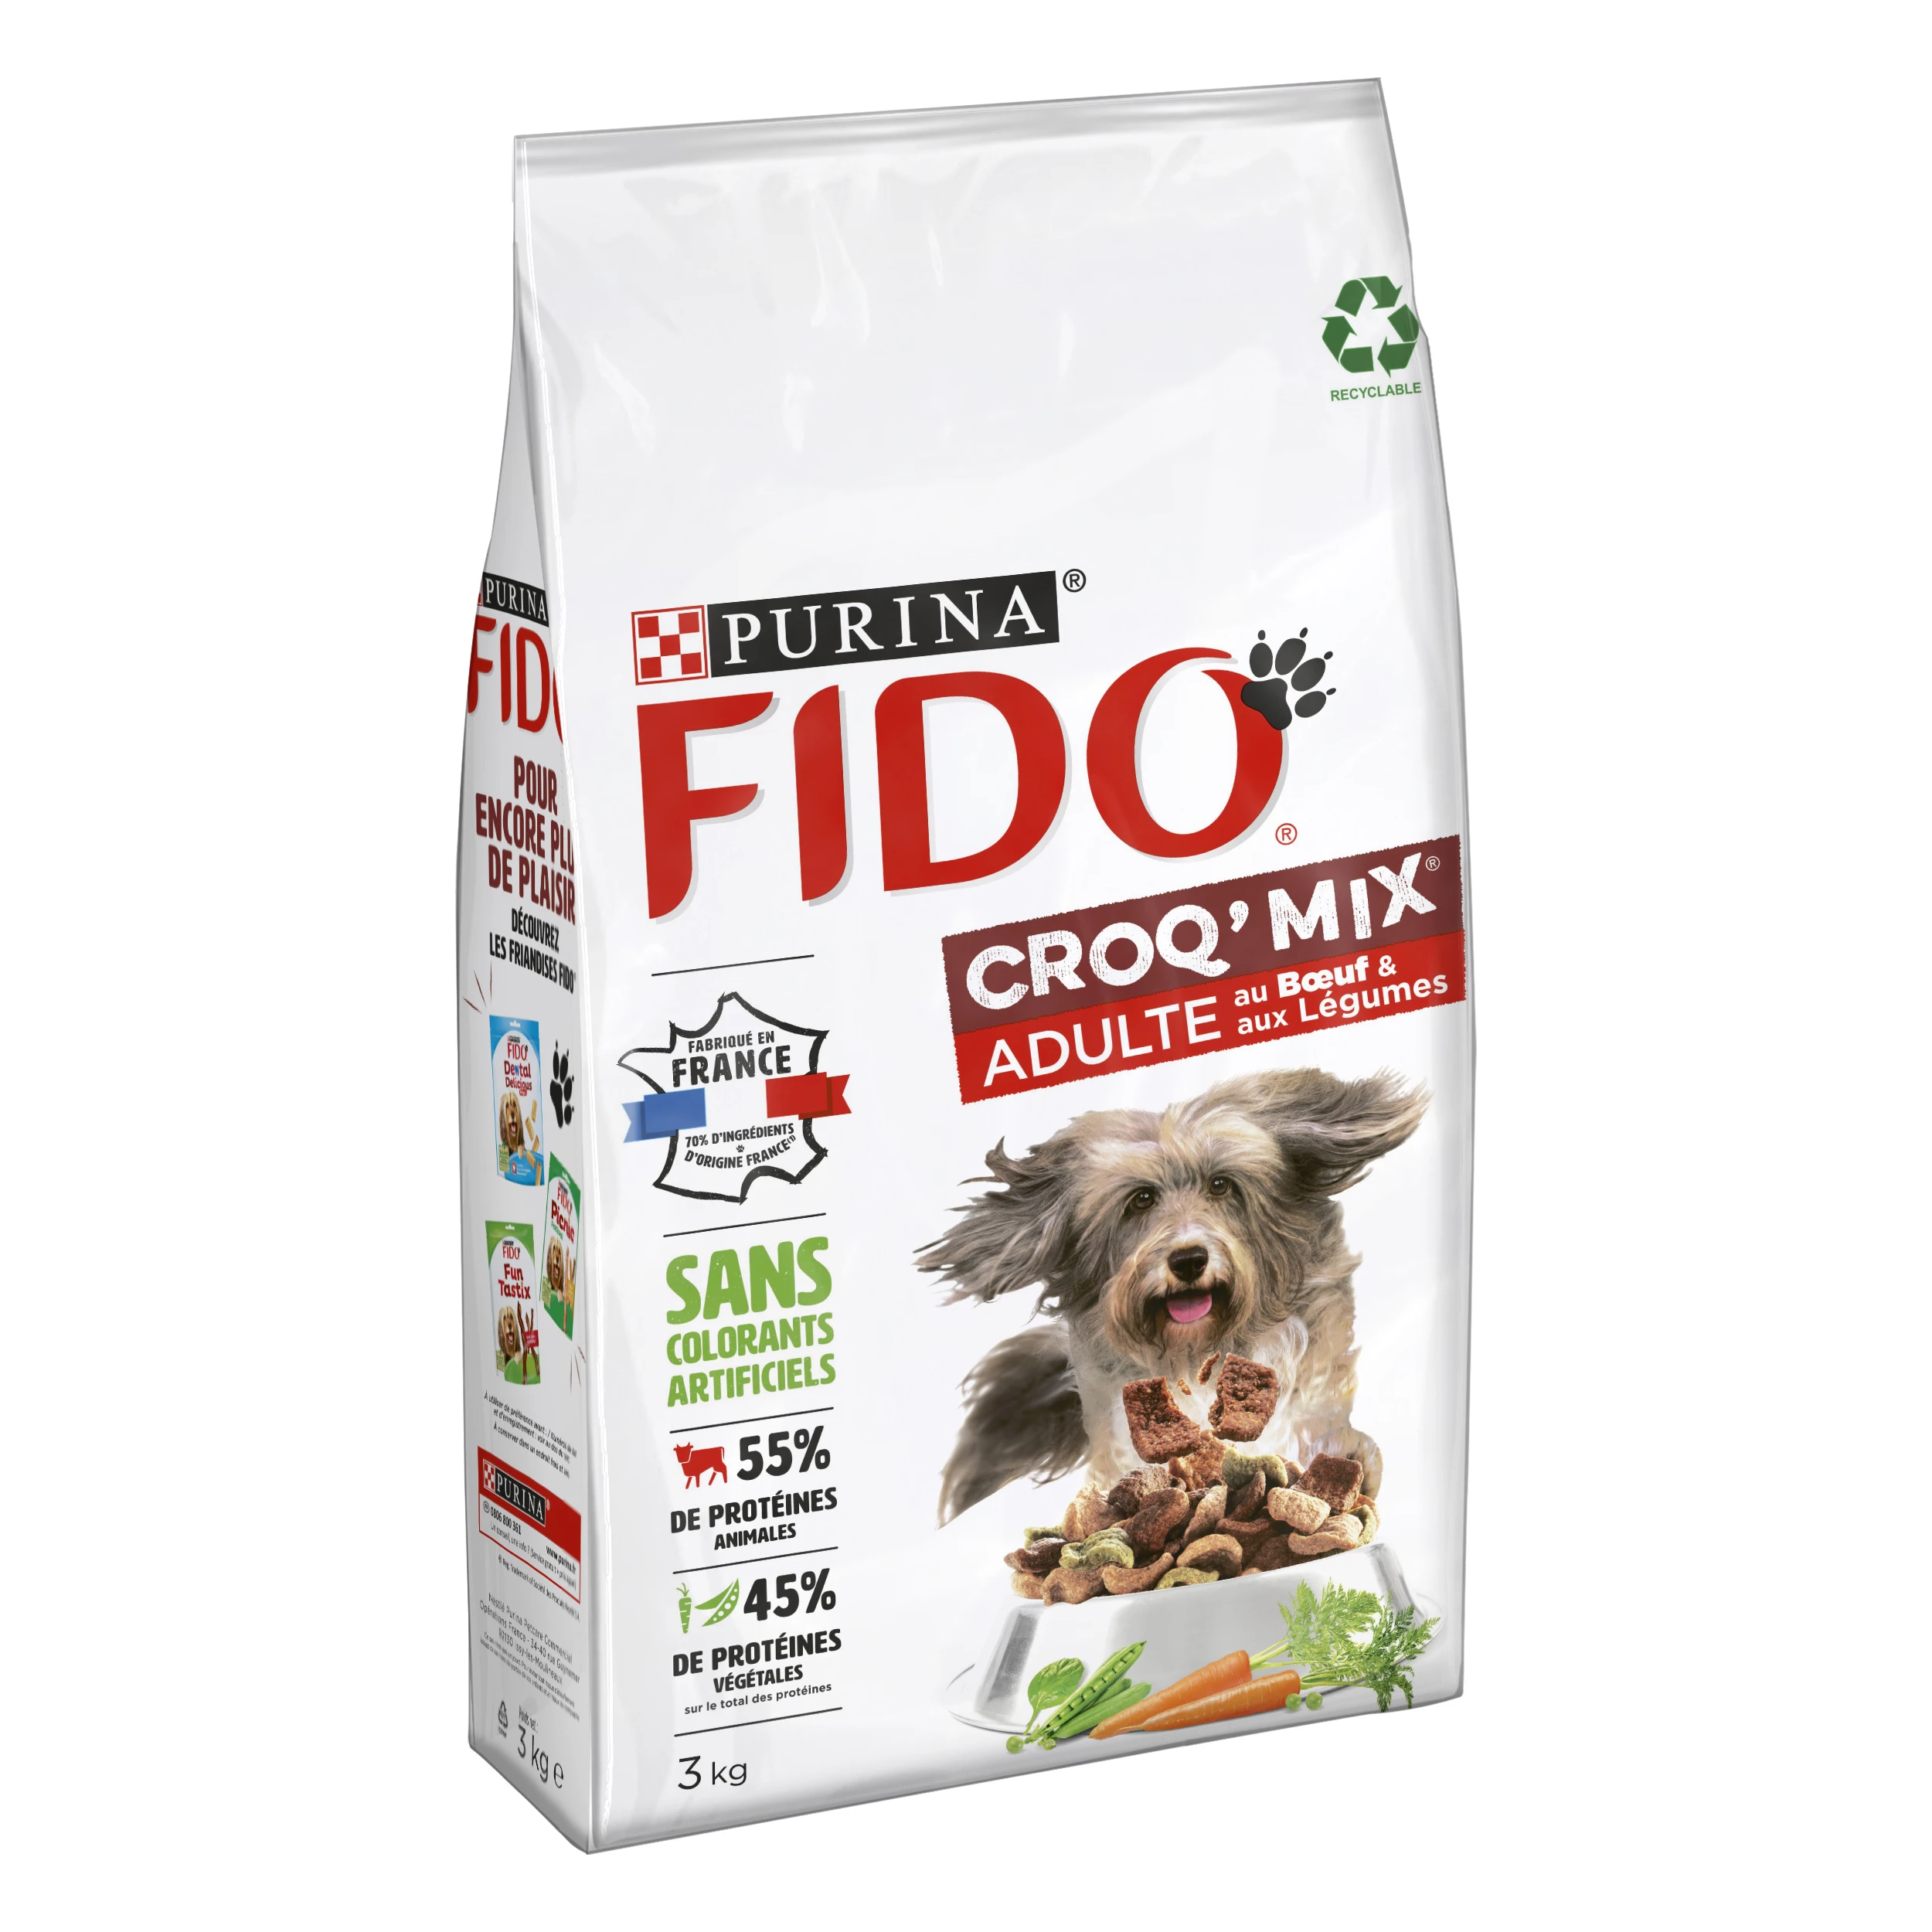 Croq' mix ração para cães adultos com carne e vegetais 3kg - PURINA FIDO